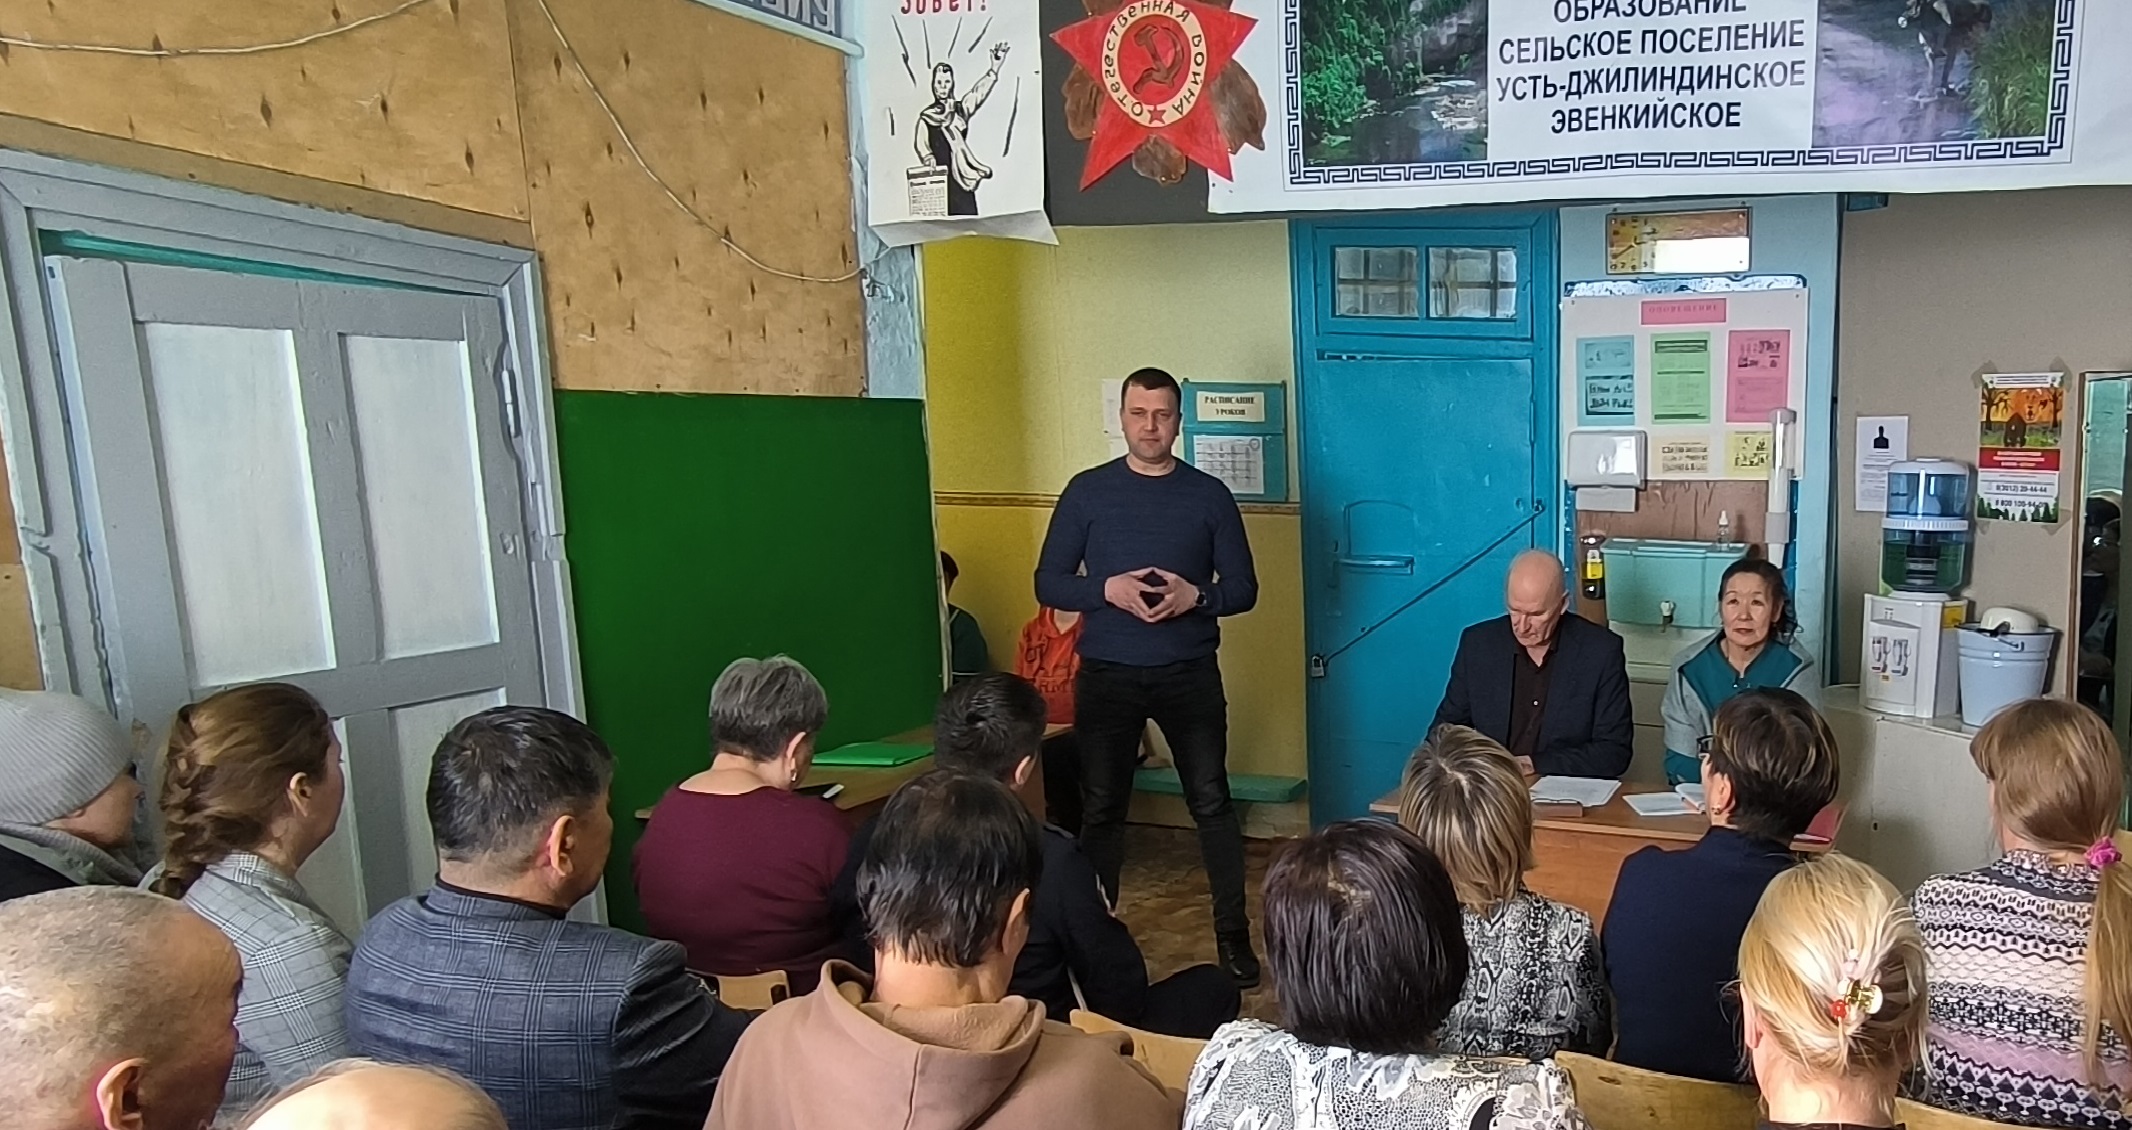 АО «Хиагда» обсудило с жителями Усть–Джилиндинского сельского поселения реализацию социальных проектов